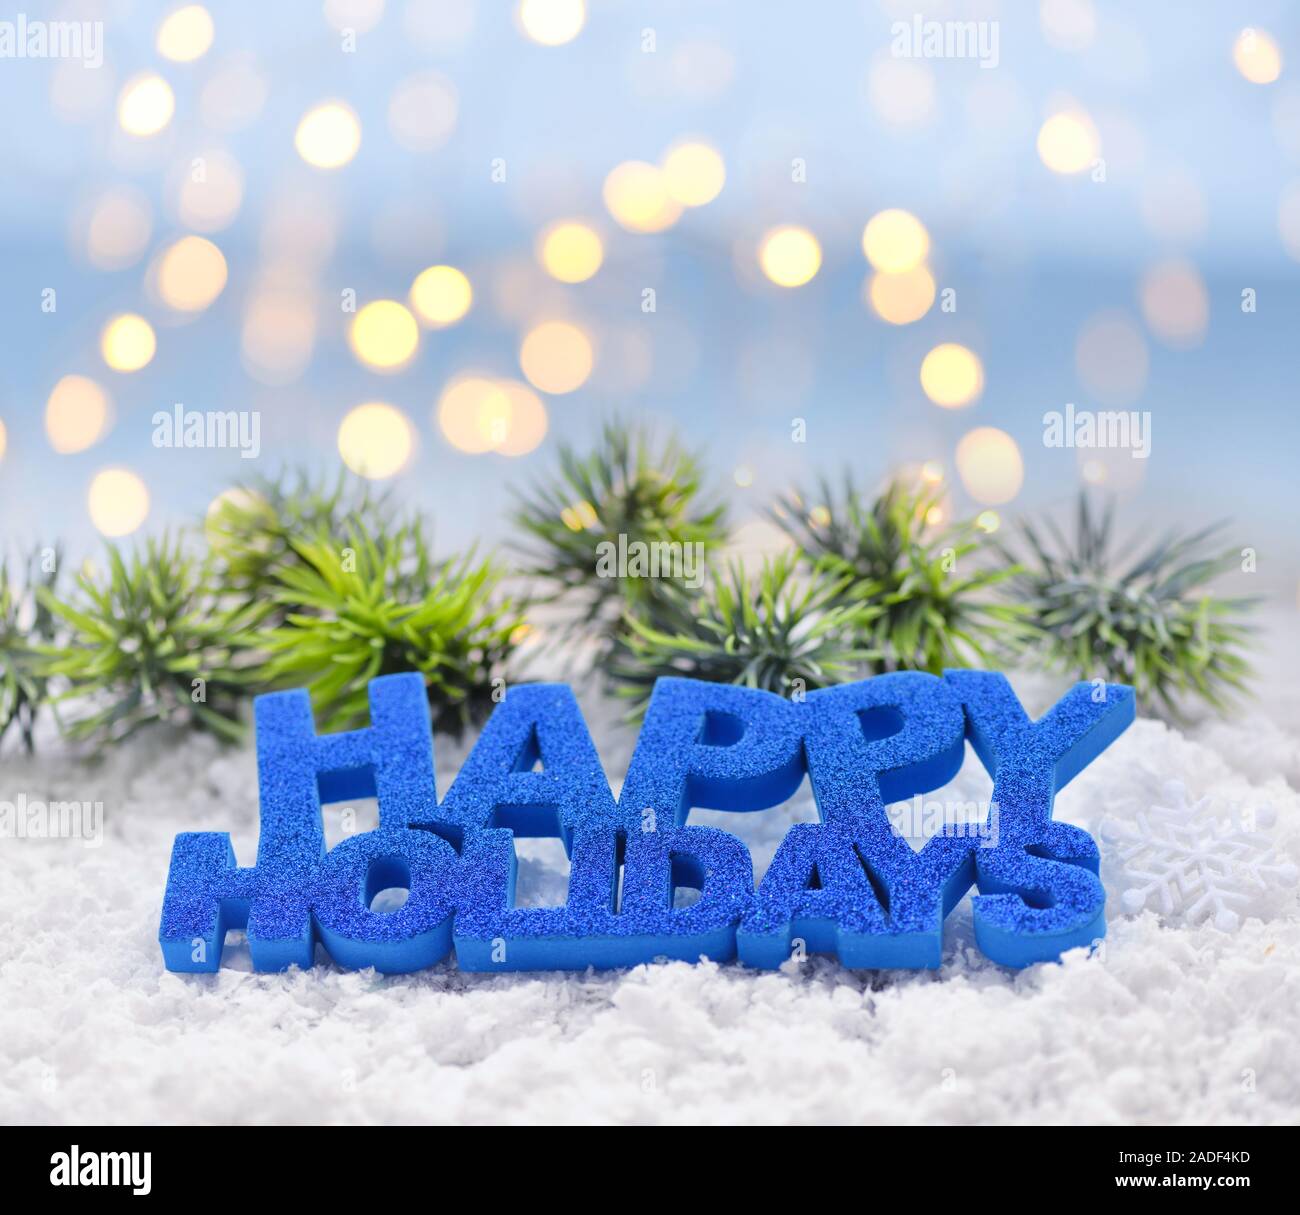 Saluto "Happy Holidays' sulla neve sullo sfondo di luci festive. Natale o Capodanno saluto il card. Foto Stock